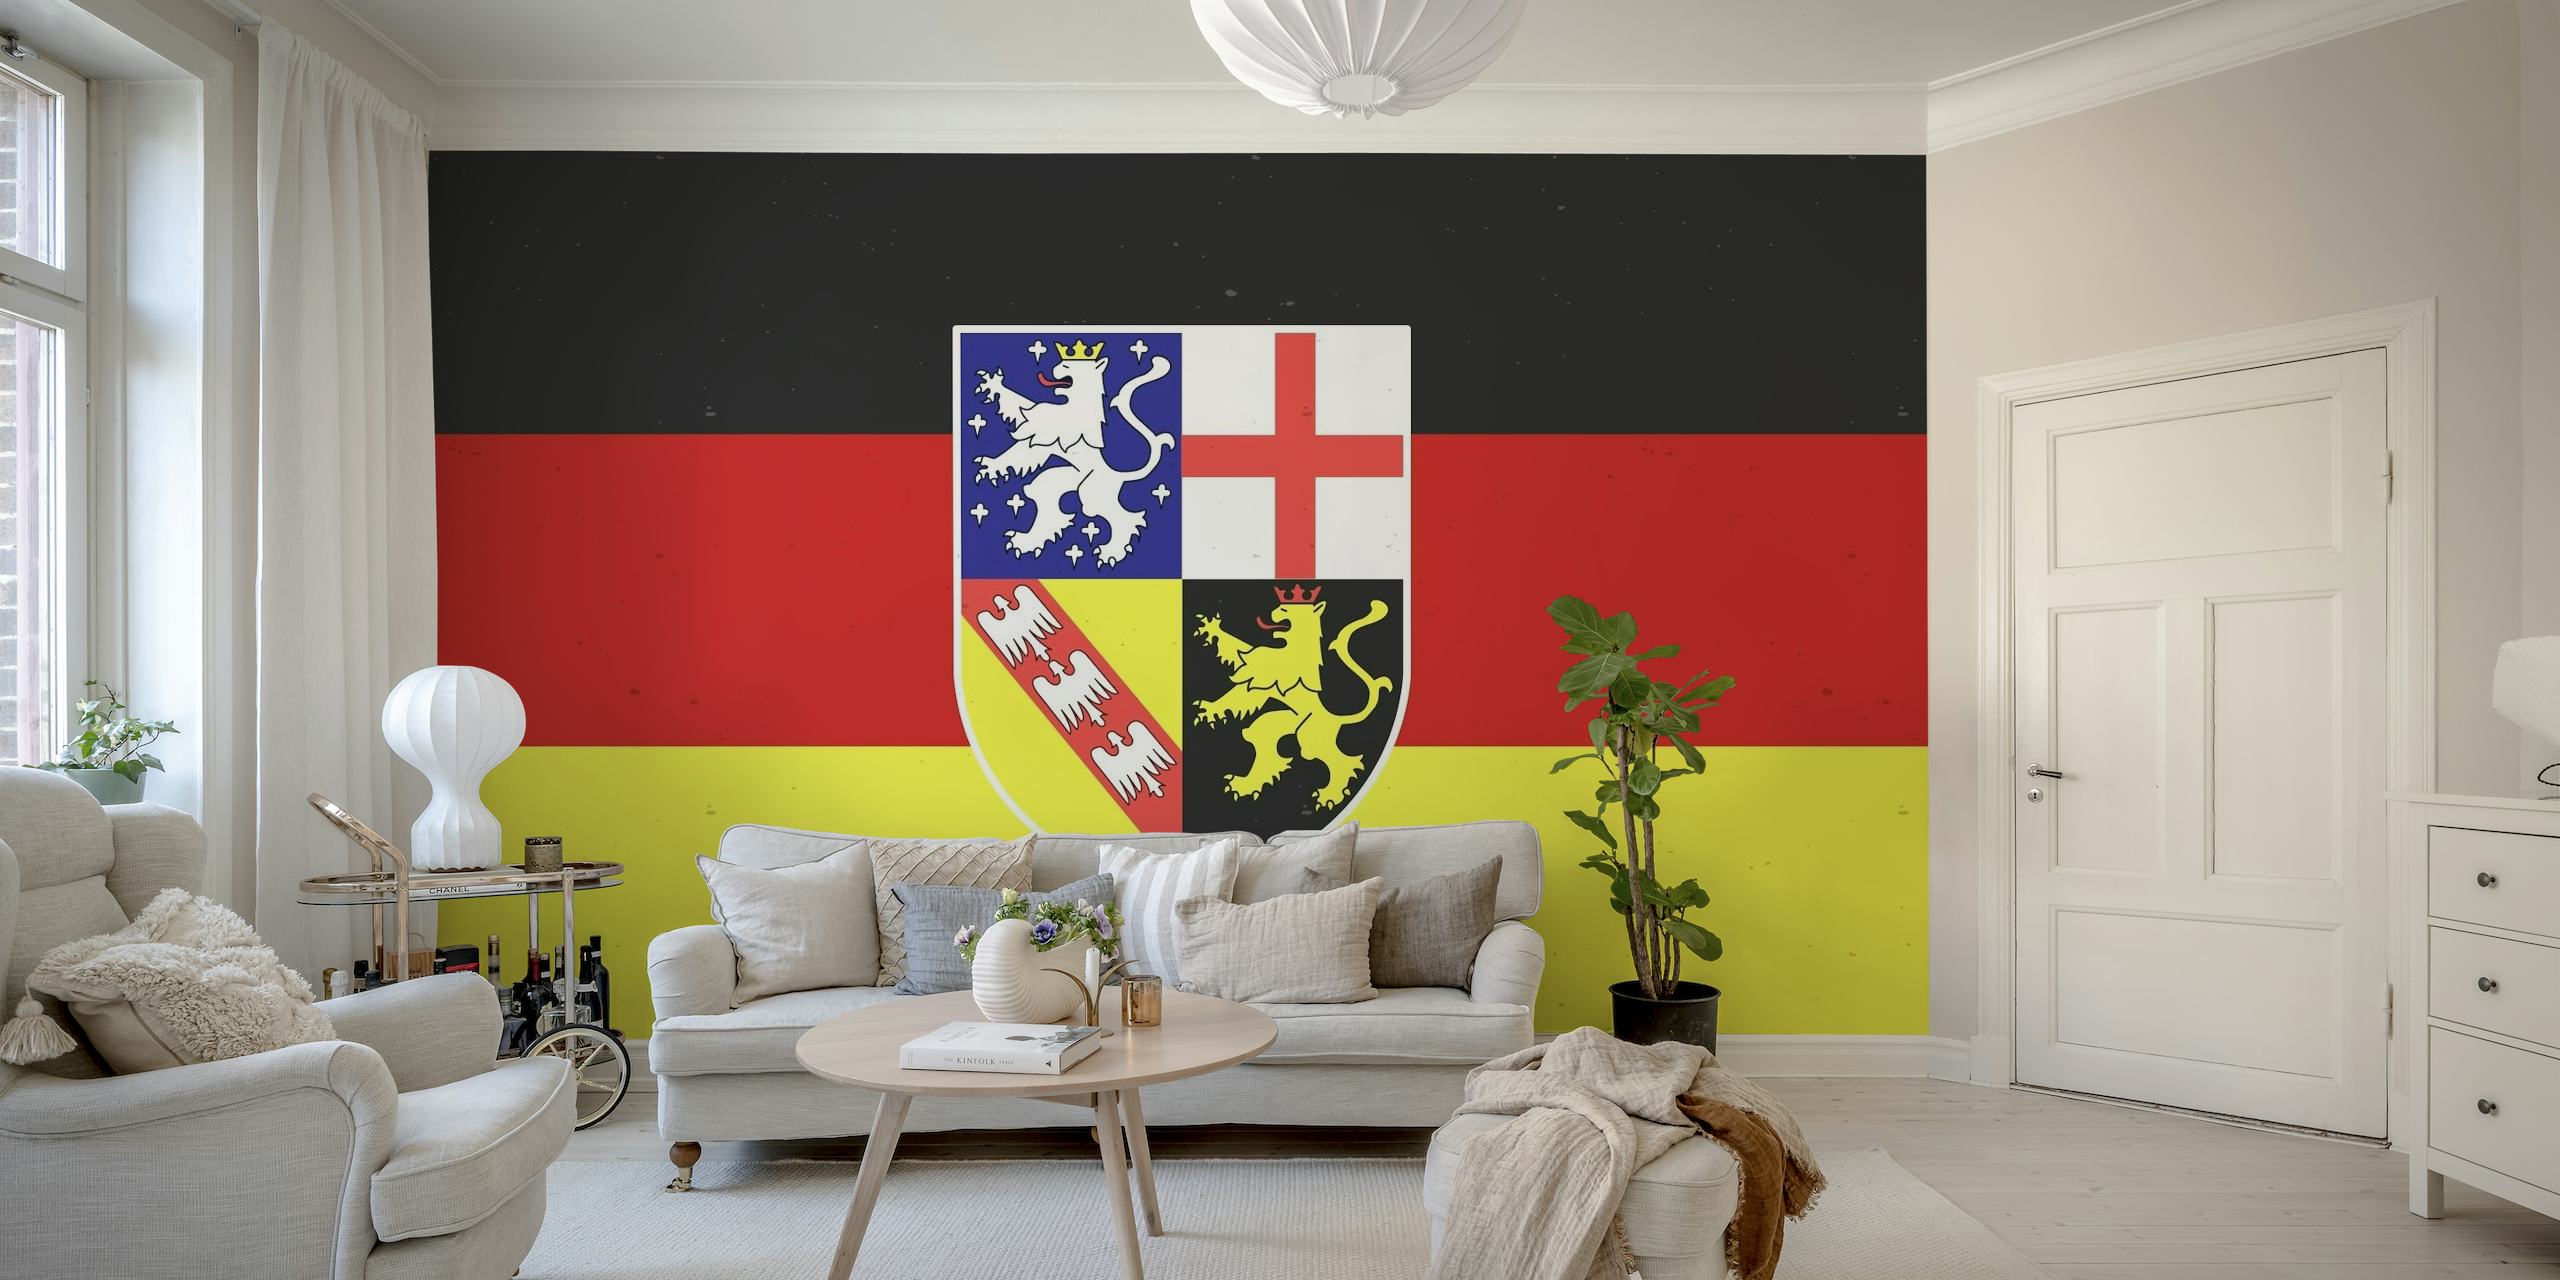 Saarland Germany behang